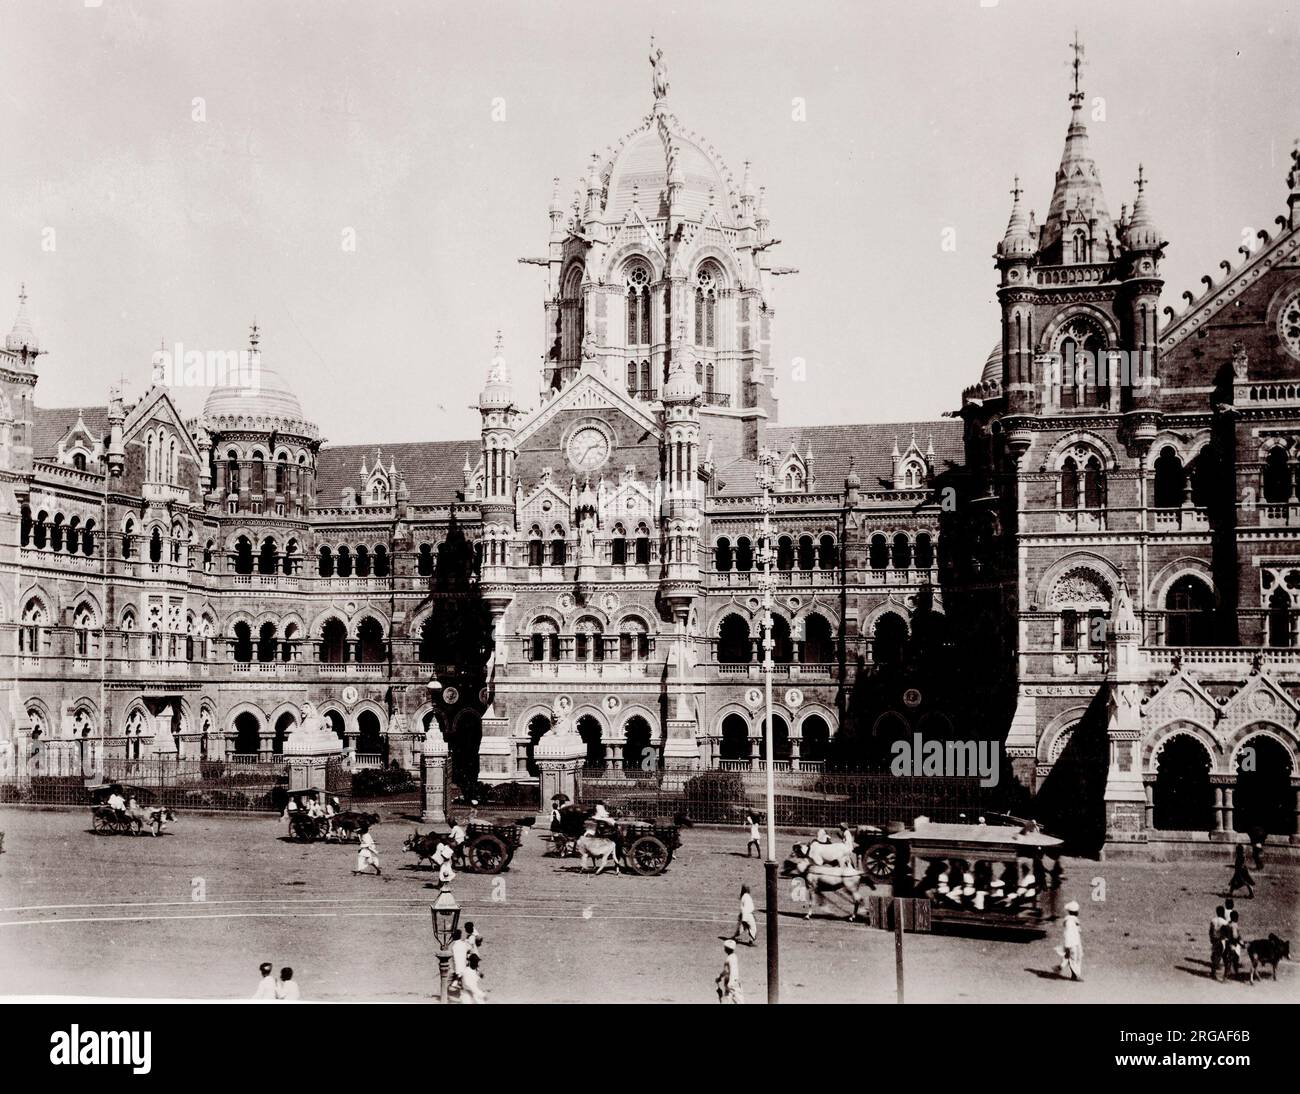 Photographie ancienne du XIXe siècle : Chhatrapati Shivaji Terminusi, également connu sous son ancien nom de Victoria Terminus, est une gare ferroviaire de terminal historique et un site classé au patrimoine mondial de l'UNESCO à Bombay, Mumbai, Maharashtra, Inde. Banque D'Images